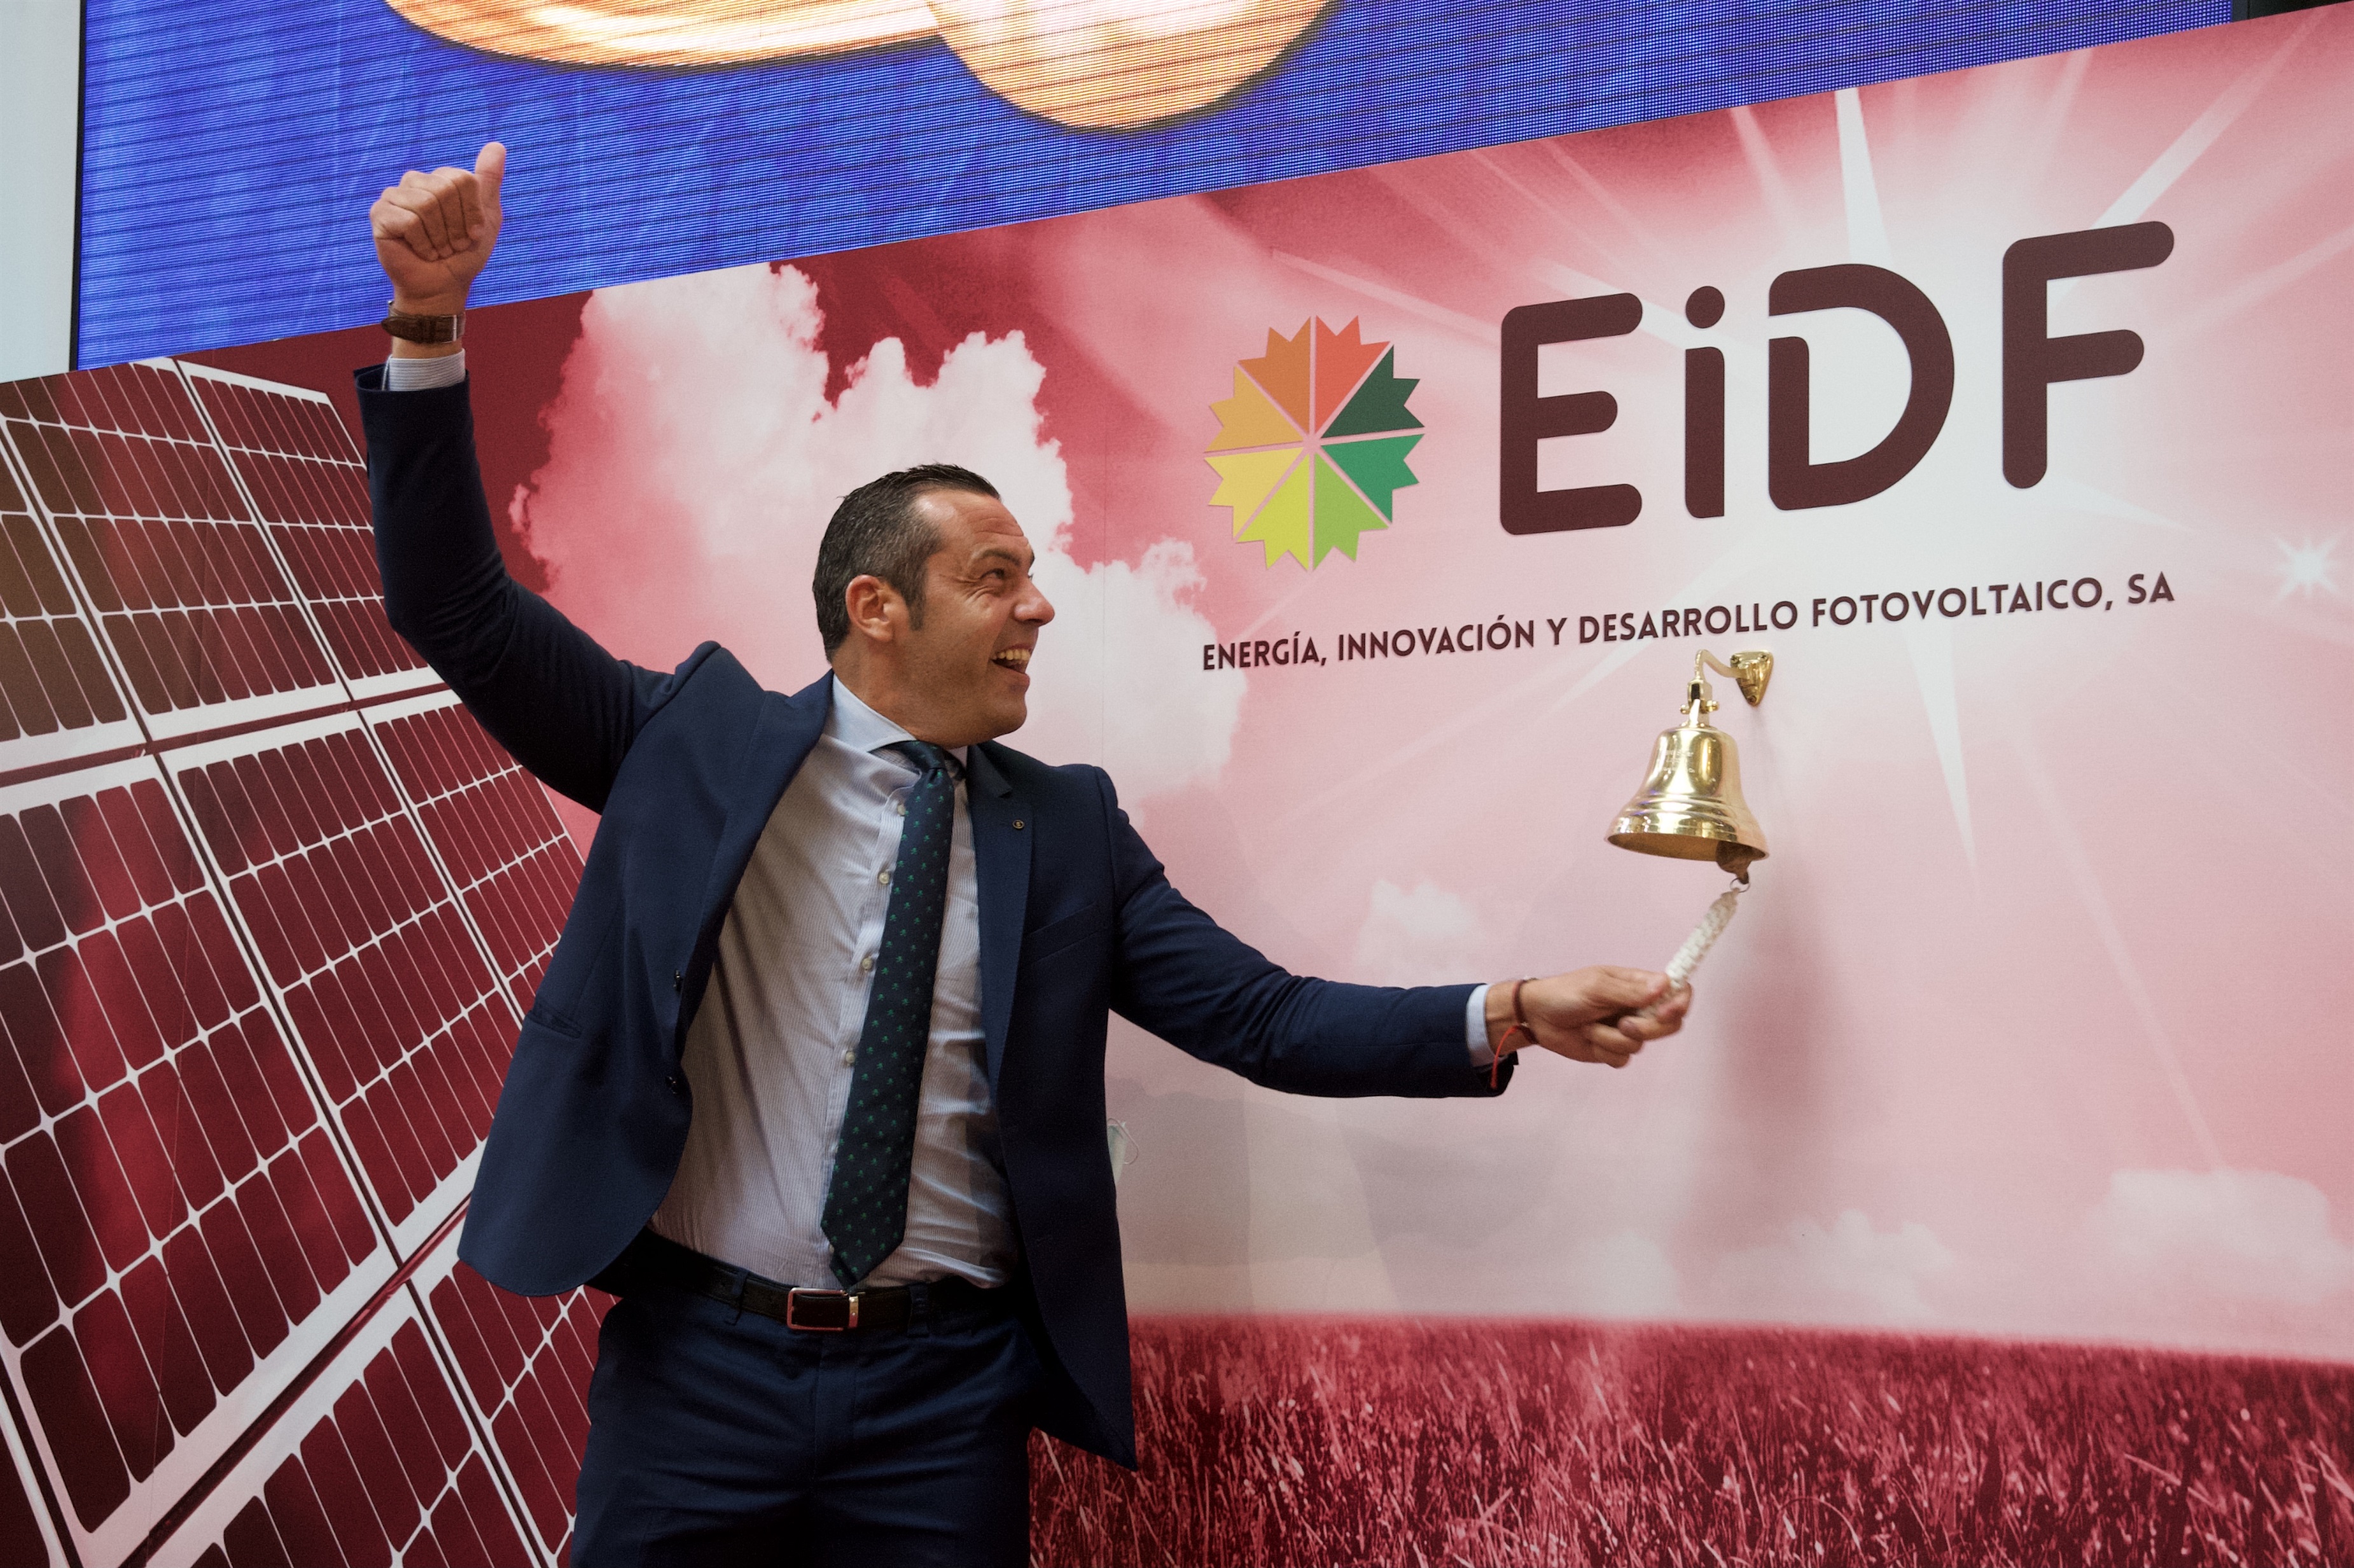 La CNMV destapa que el presidente de la energética Eidf pudo haber falseado documentos